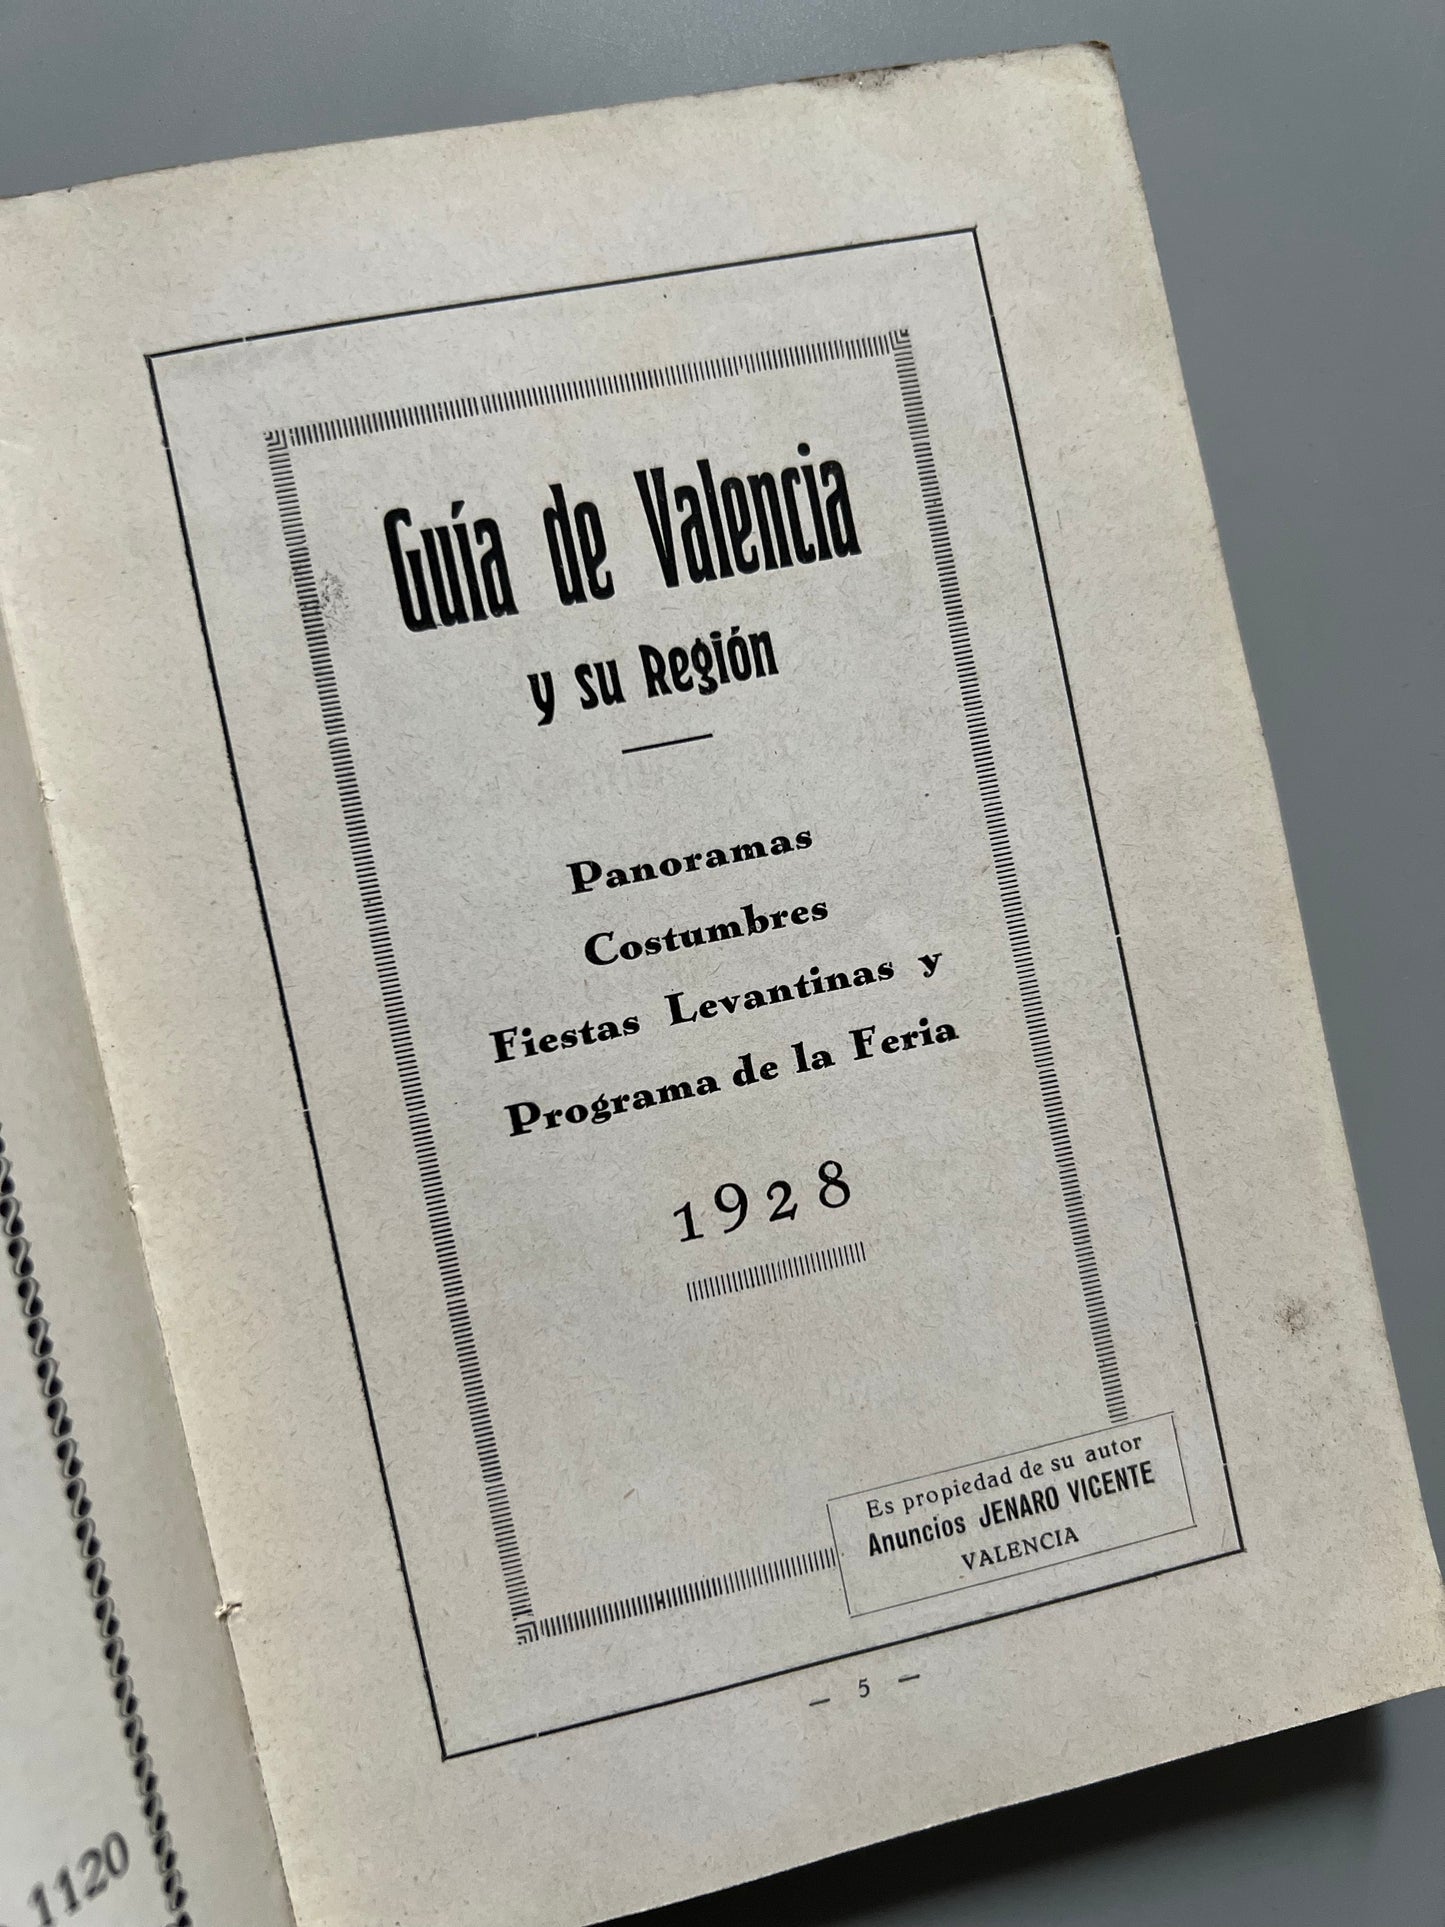 Guía de Valencia y su feria - Casa anunciadora Jenaro Vicente, 1928